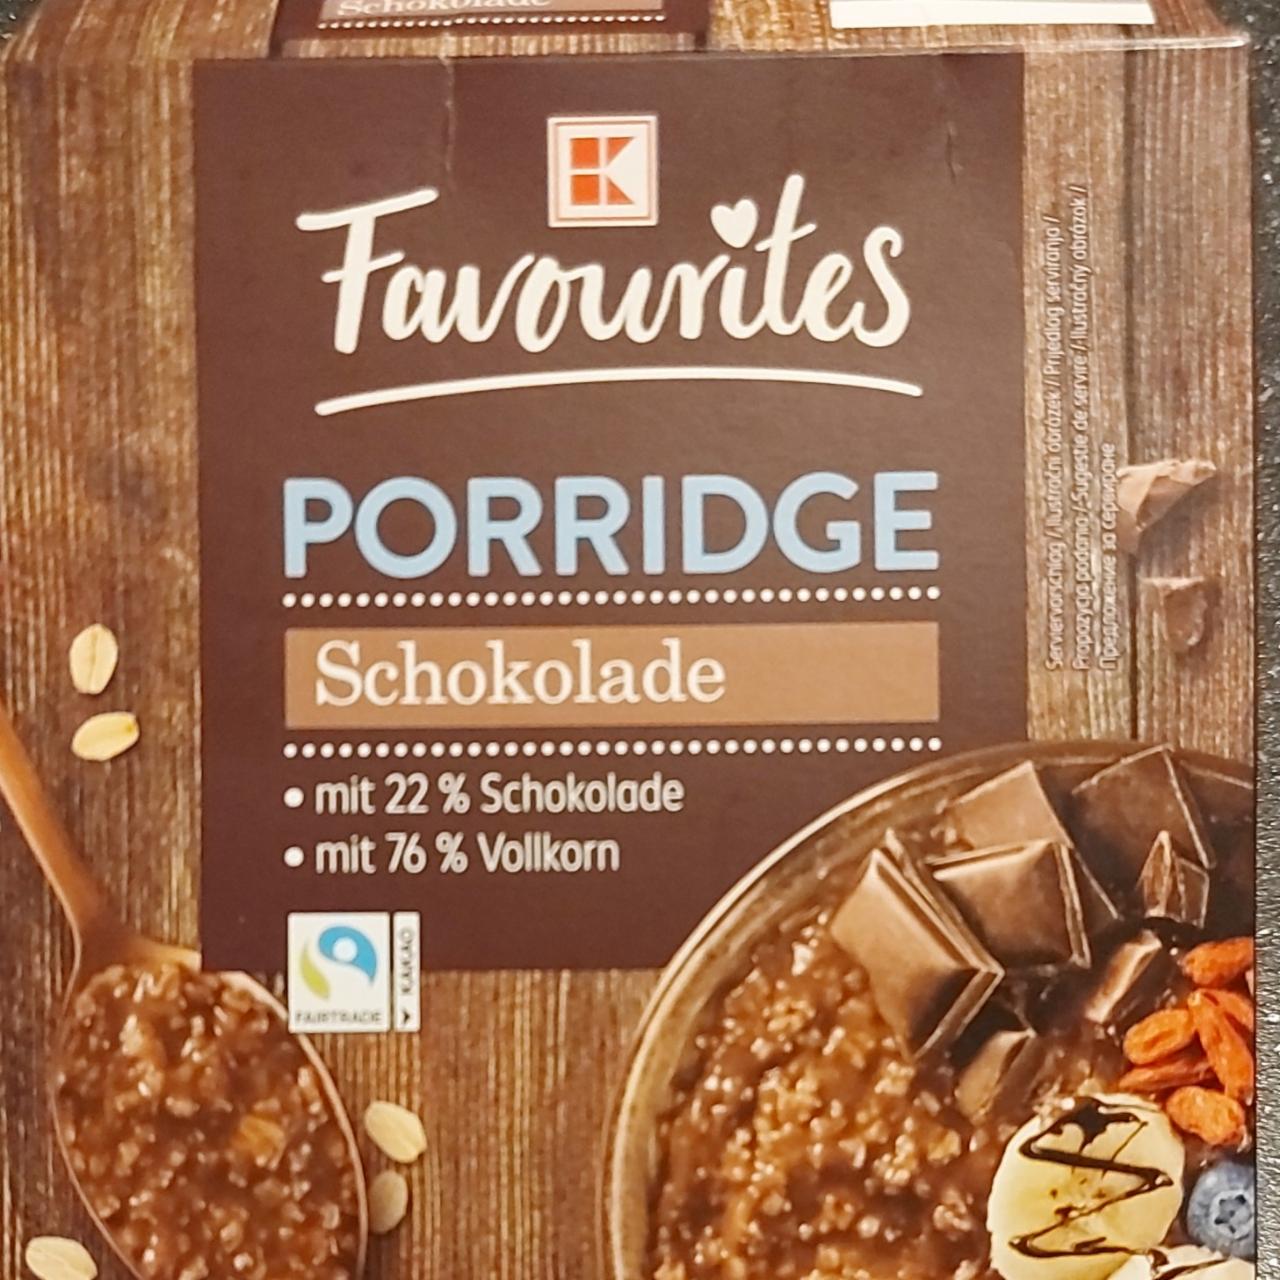 Fotografie - Porridge Schokolade K-Favourites